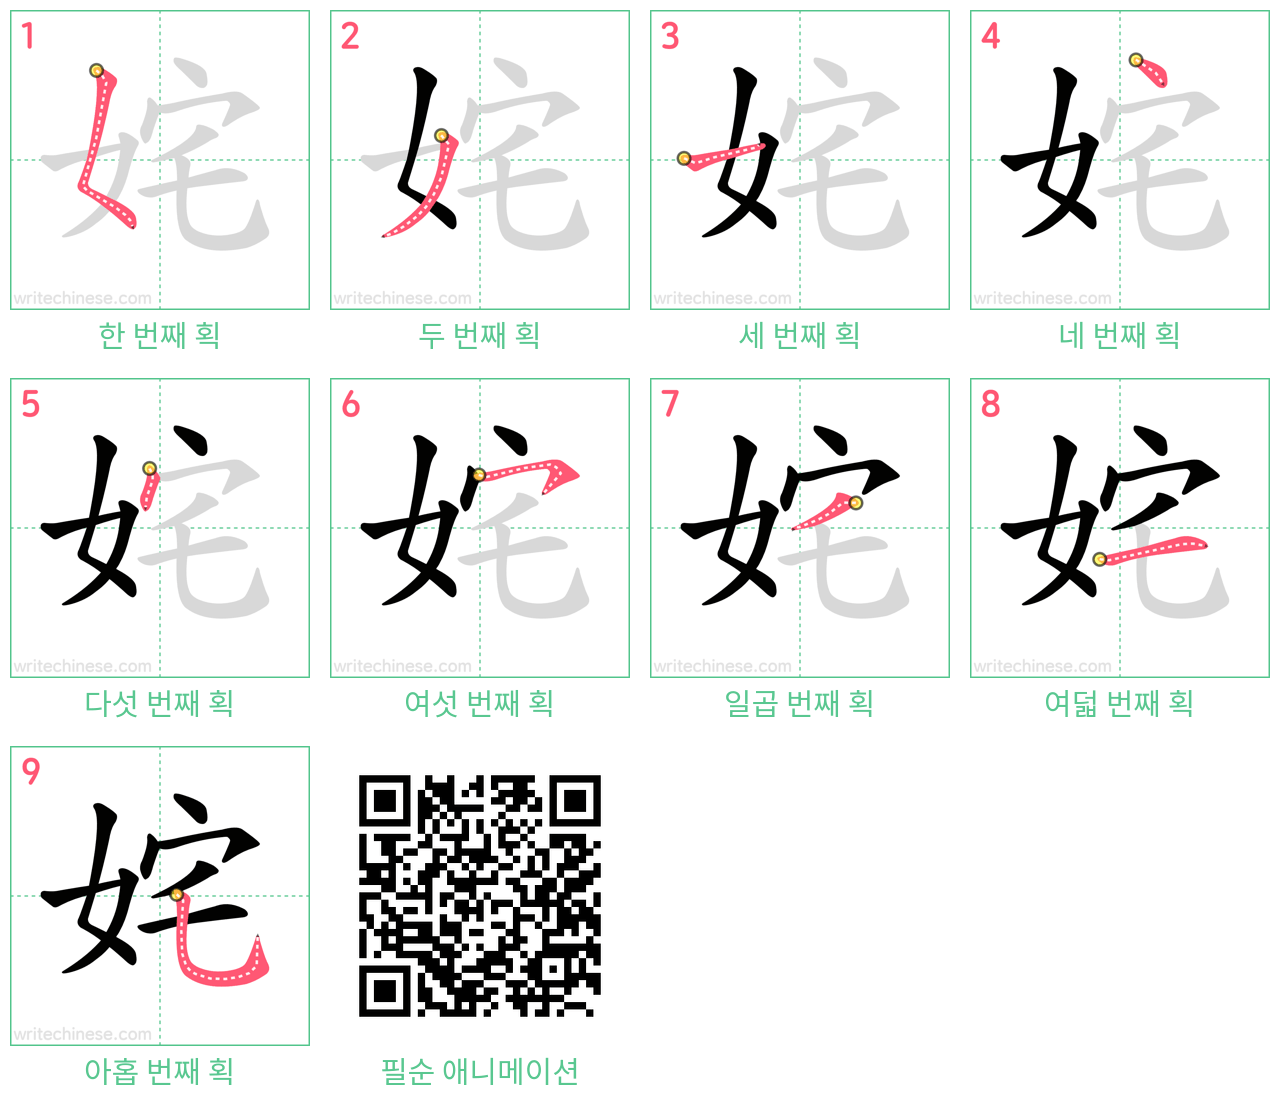 姹 step-by-step stroke order diagrams